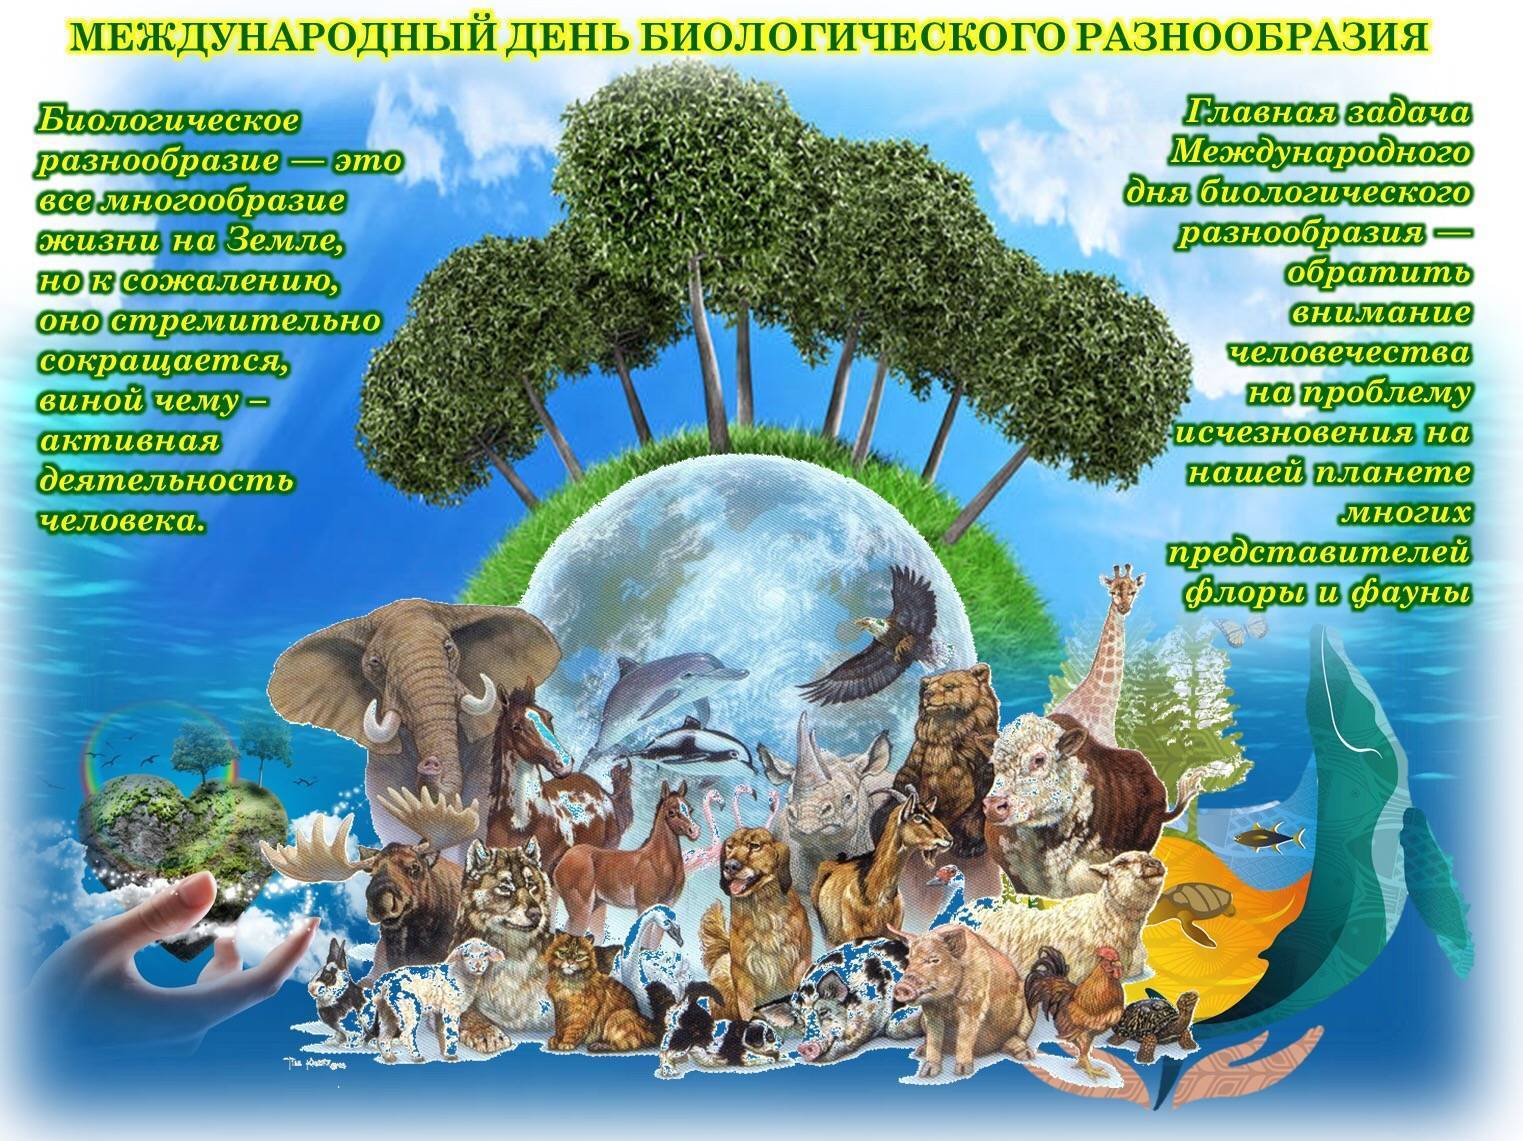 Международный день биологического разнообразия деятельность а также тема